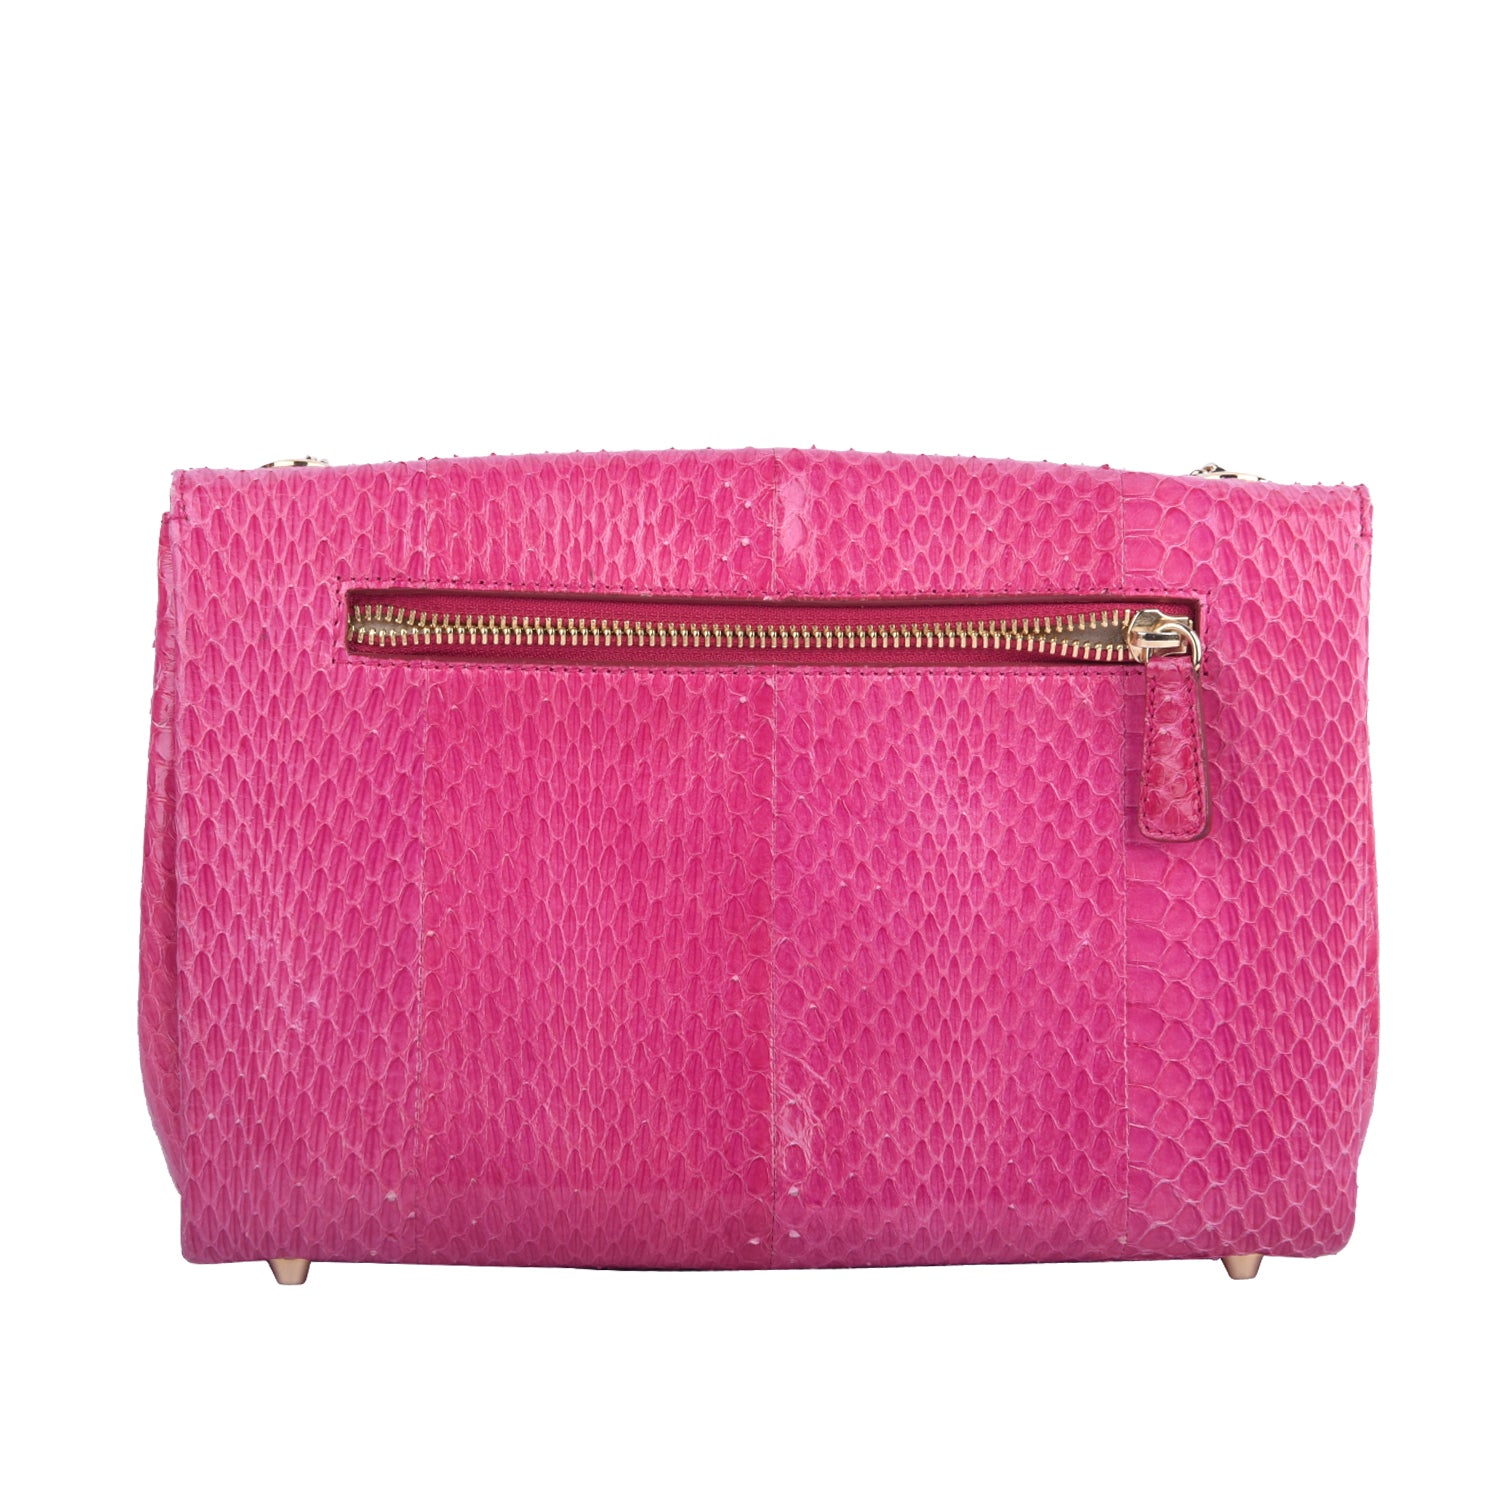 Pink Snakeskin Handbag